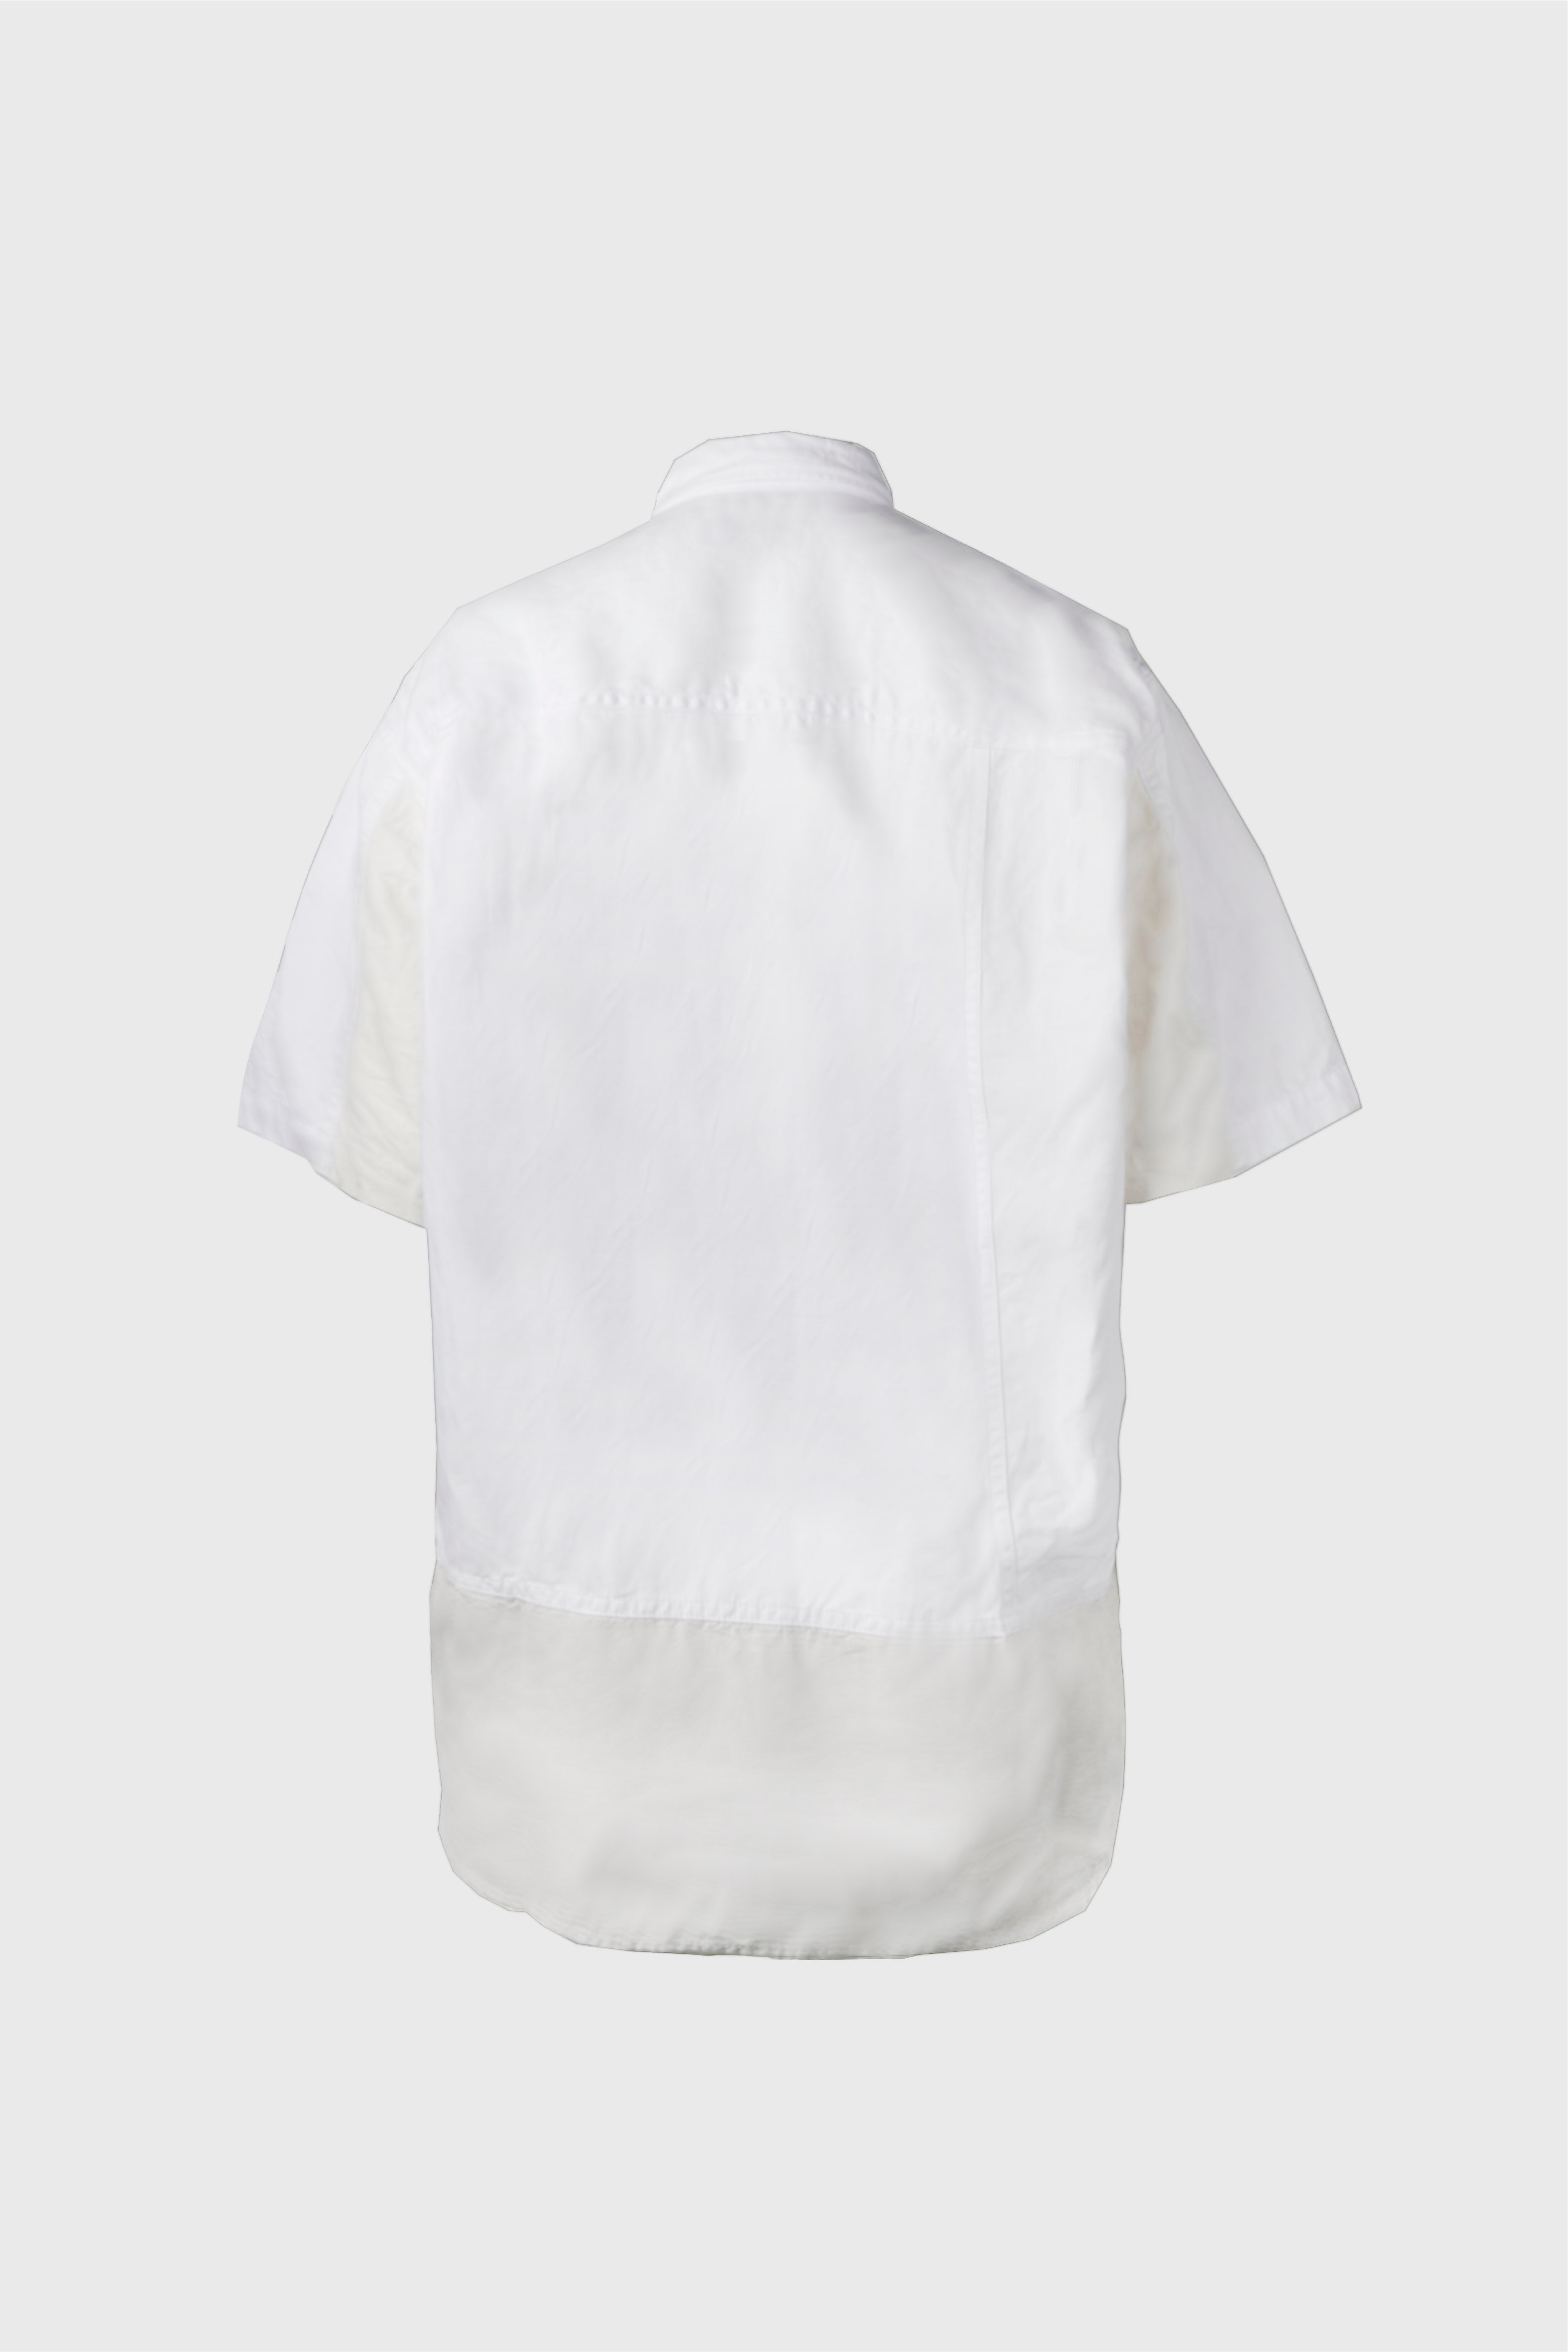 Selectshop FRAME - COMME DES GARÇONS HOMME Shirt Shirts Dubai